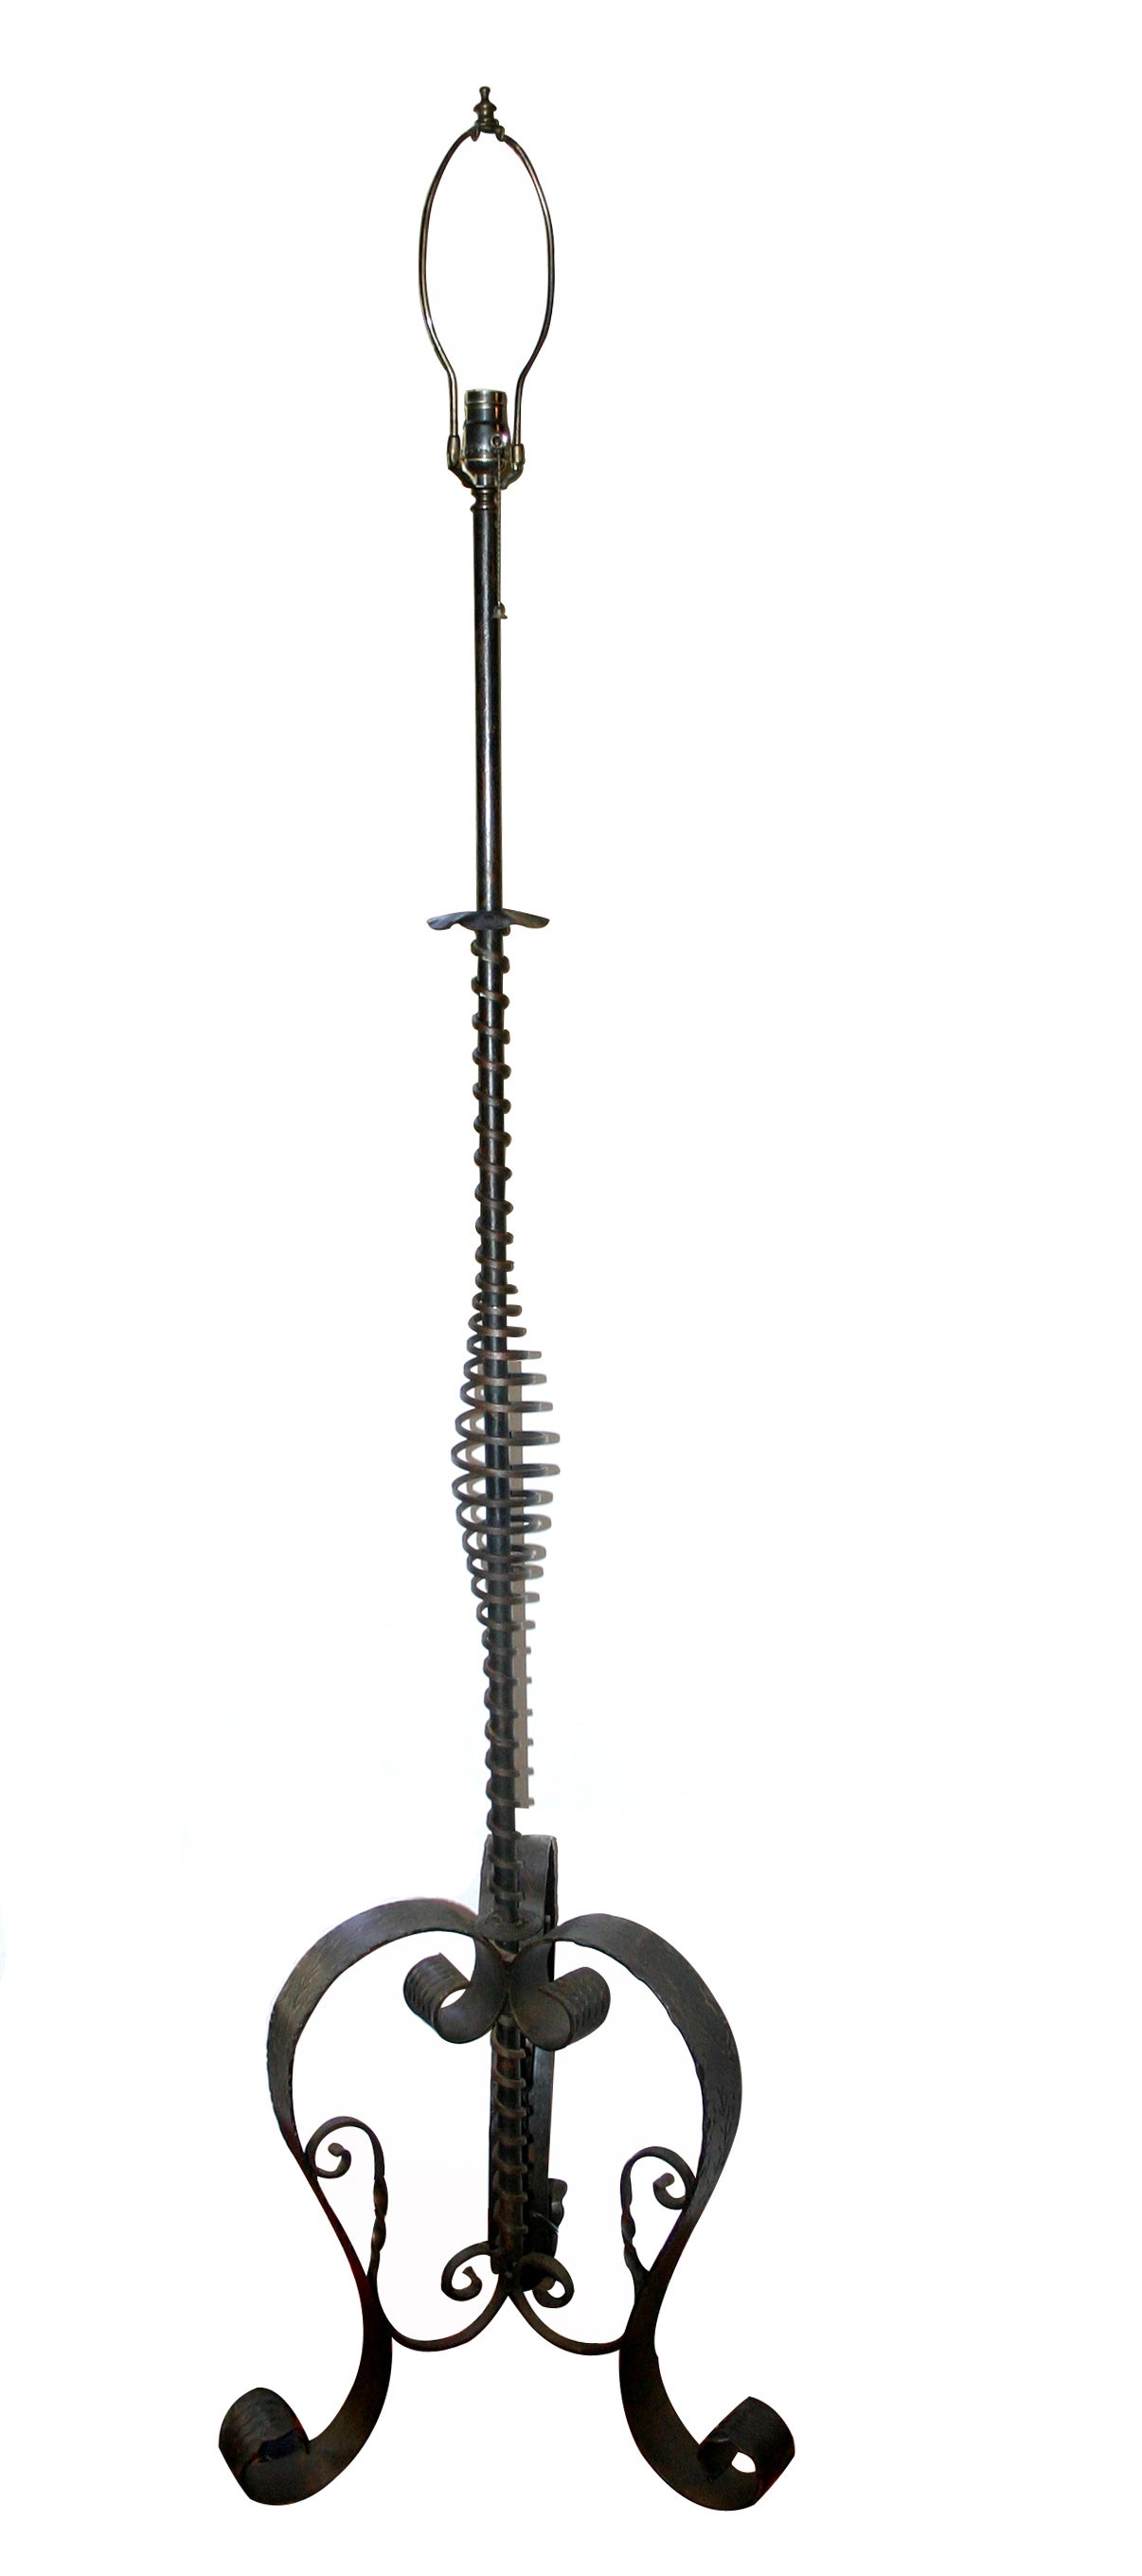 Eine Stehlampe aus gehämmertem Eisen mit originaler Patina aus der Zeit um 1900.

Abmessungen:
Höhe 66,5.